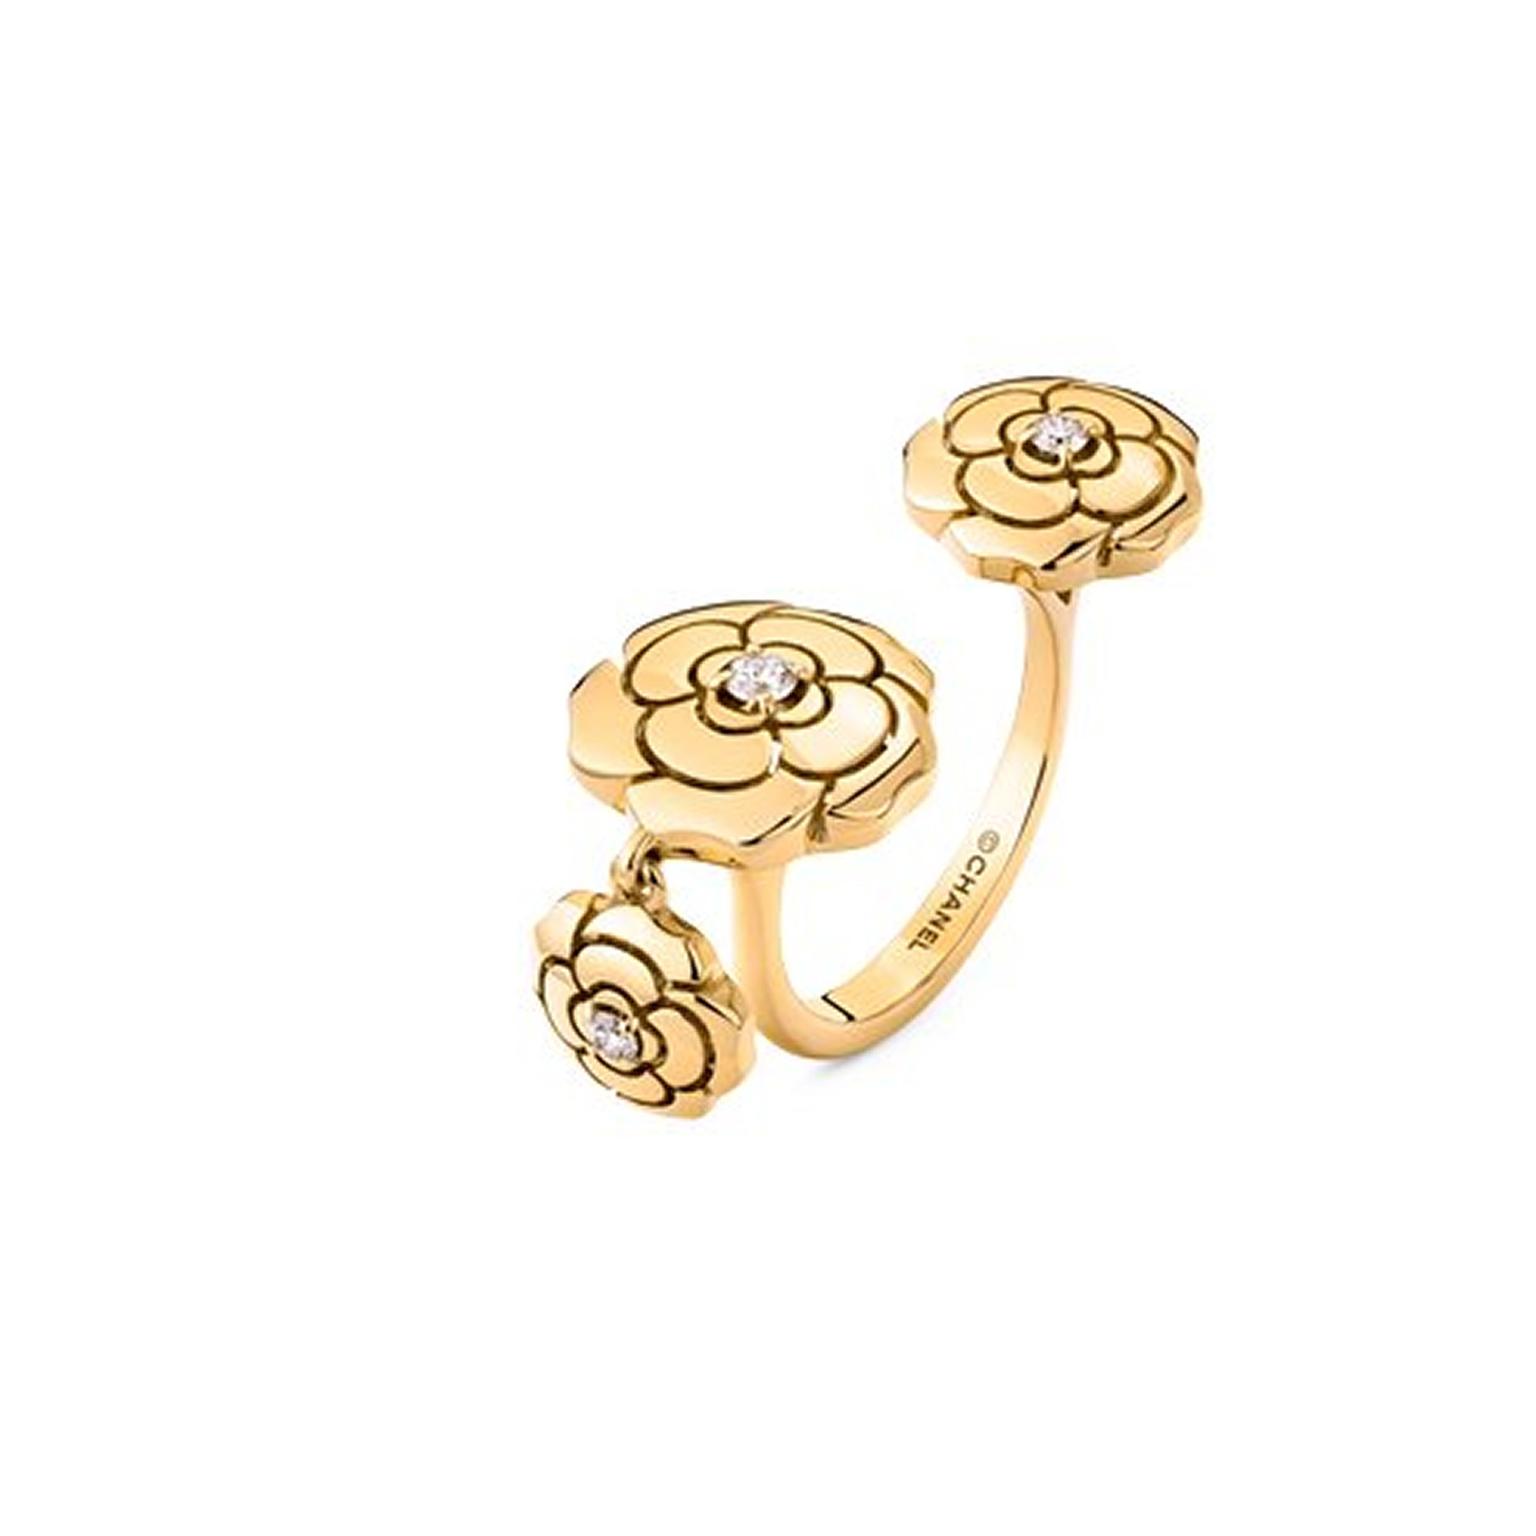 Extrait de Camélia charm ring by Chanel